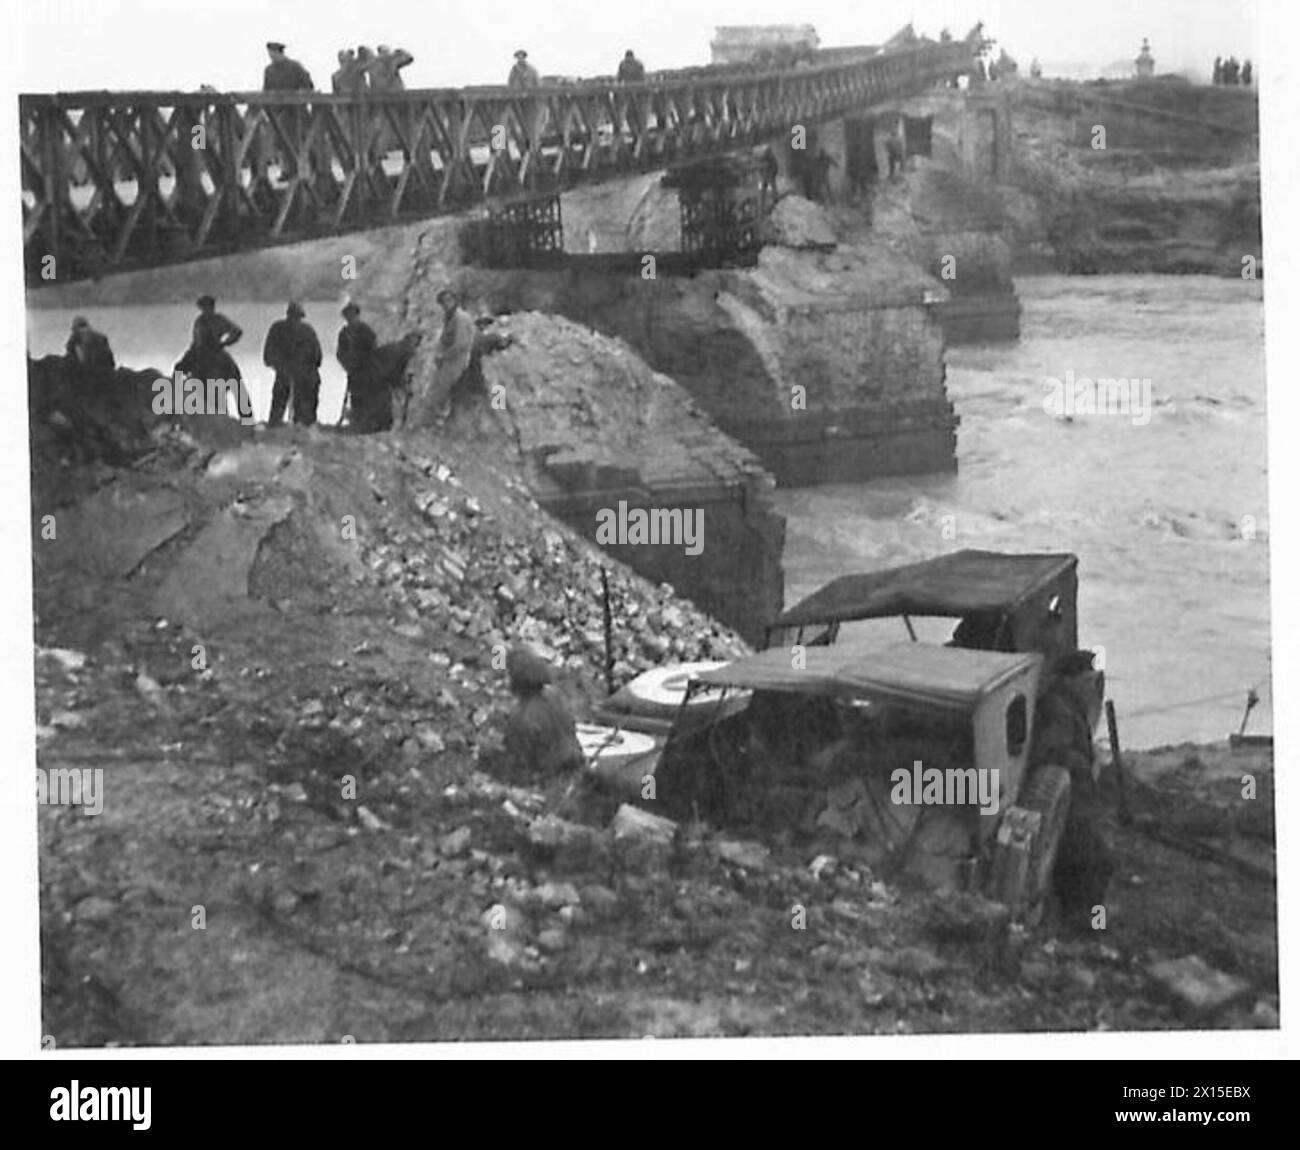 ACHTE ARMEE : RAVENNA - die Brücke über den Fluss Uniti, die früher viele Touristen in die Kiefernwälder vor Ravenna brachte. Wurde von den Deutschen überwältigt. Nach 18 Stunden harter Arbeit der südafrikanischen Ingenieure British Army ist eine Bailey-Brücke fast fertiggestellt Stockfoto